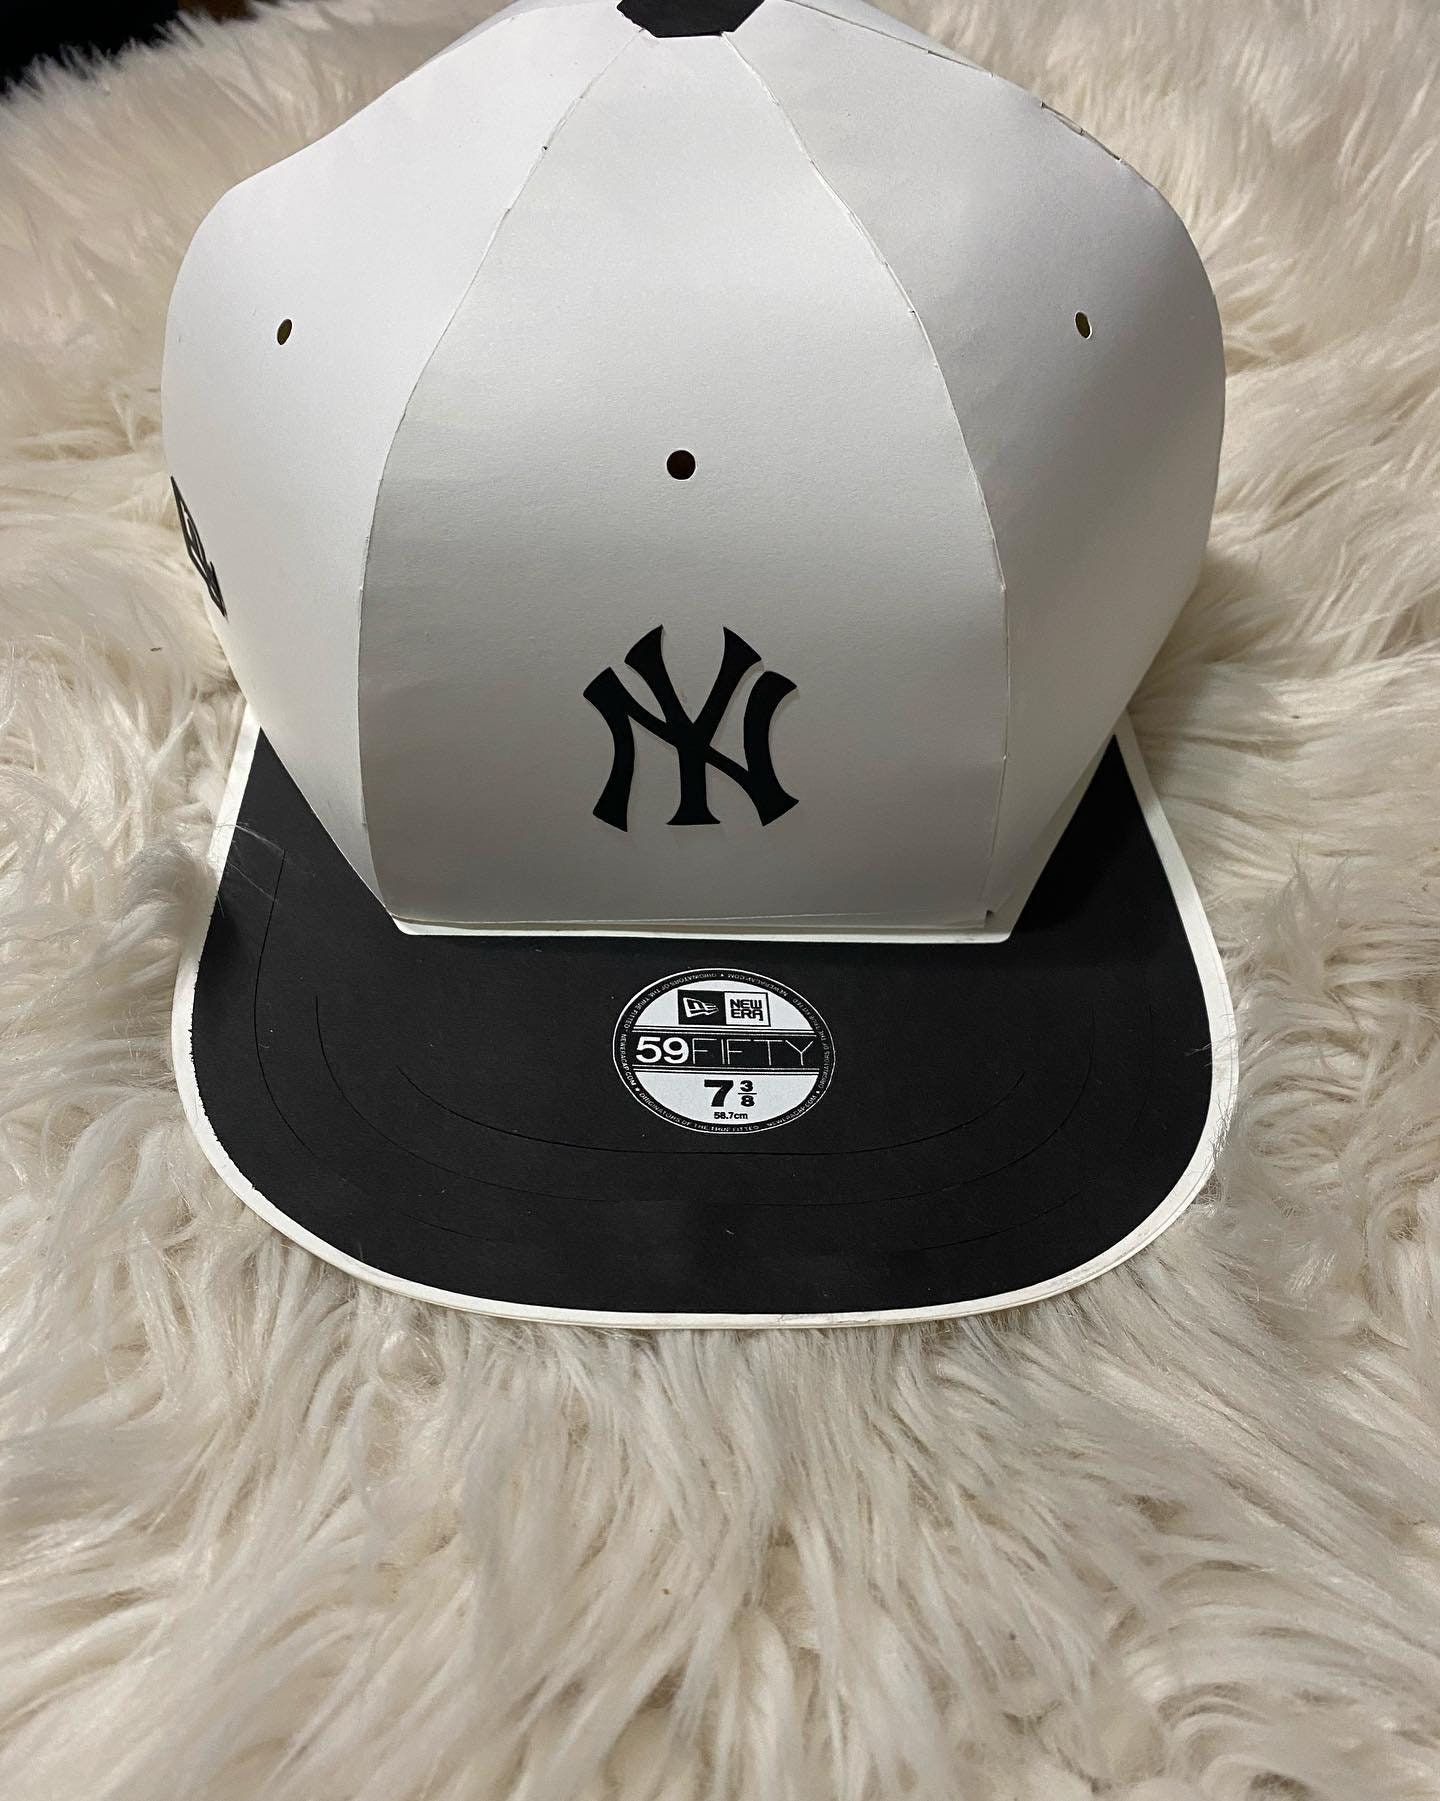 Baseball Hat Box Template Free